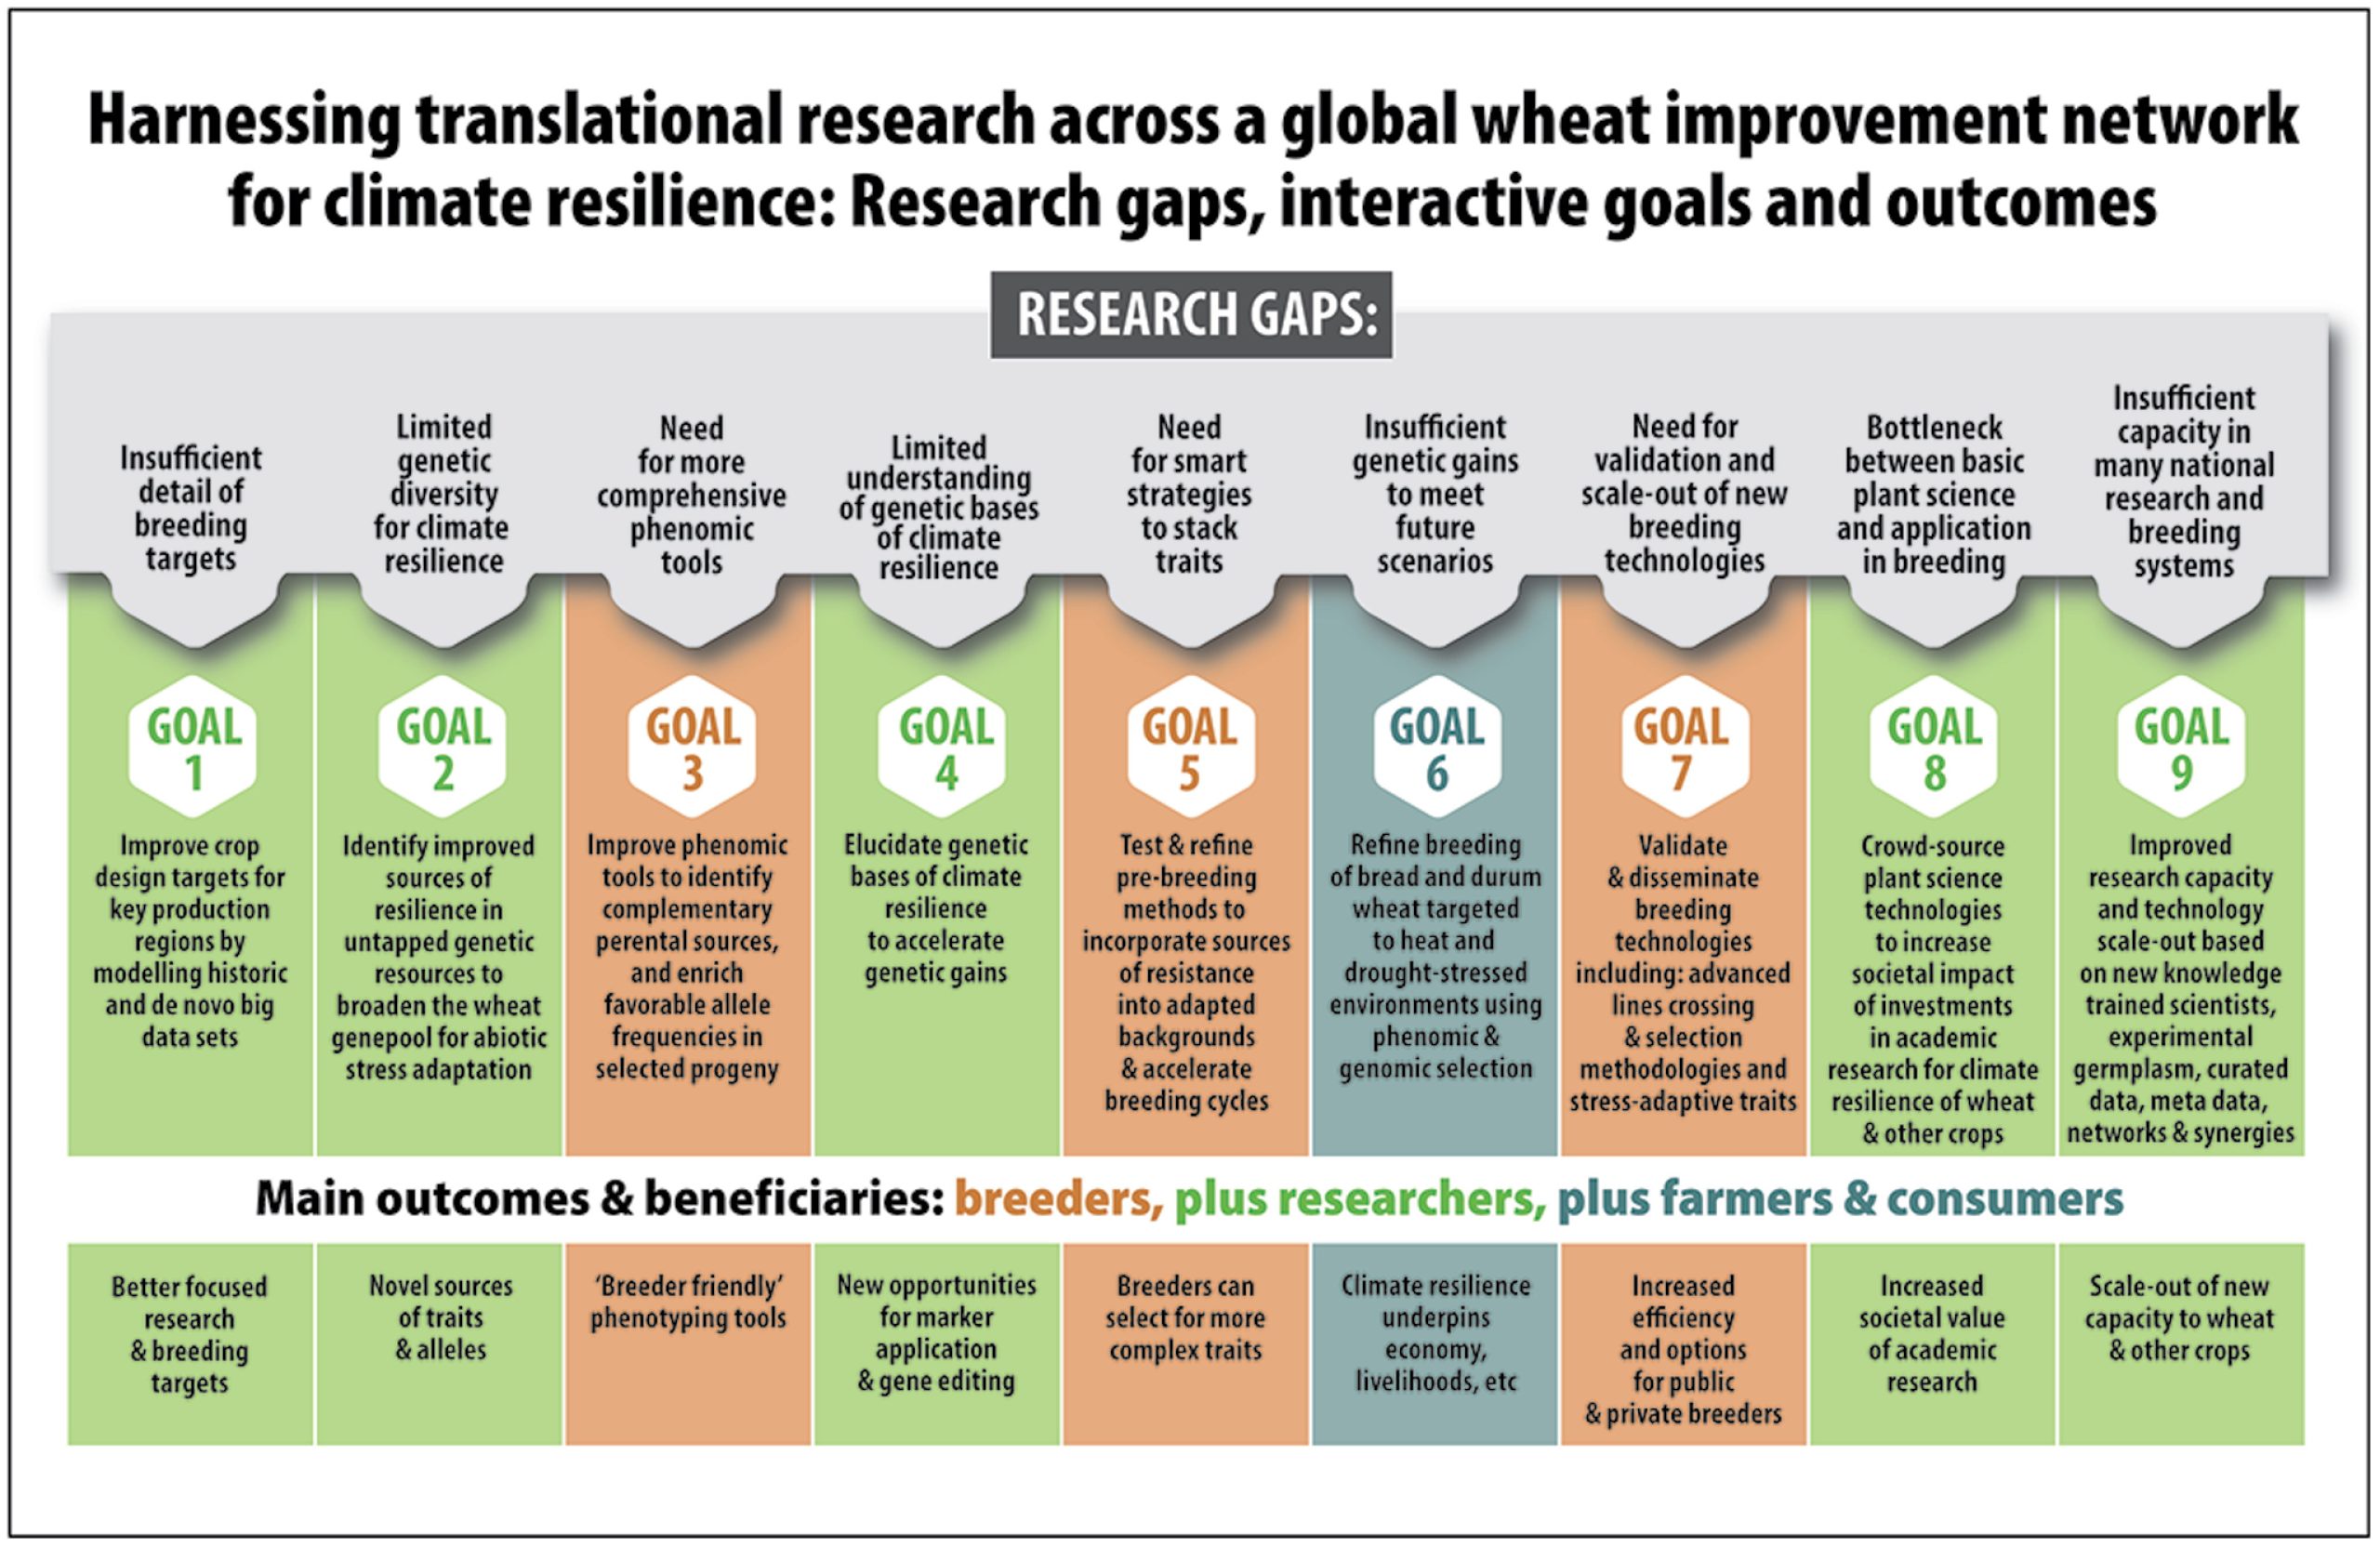 Aprovechamiento de la investigación en una red mundial de mejoramiento de trigo para la resiliencia climática: brechas en la investigación, objetivos interactivos y resultados.